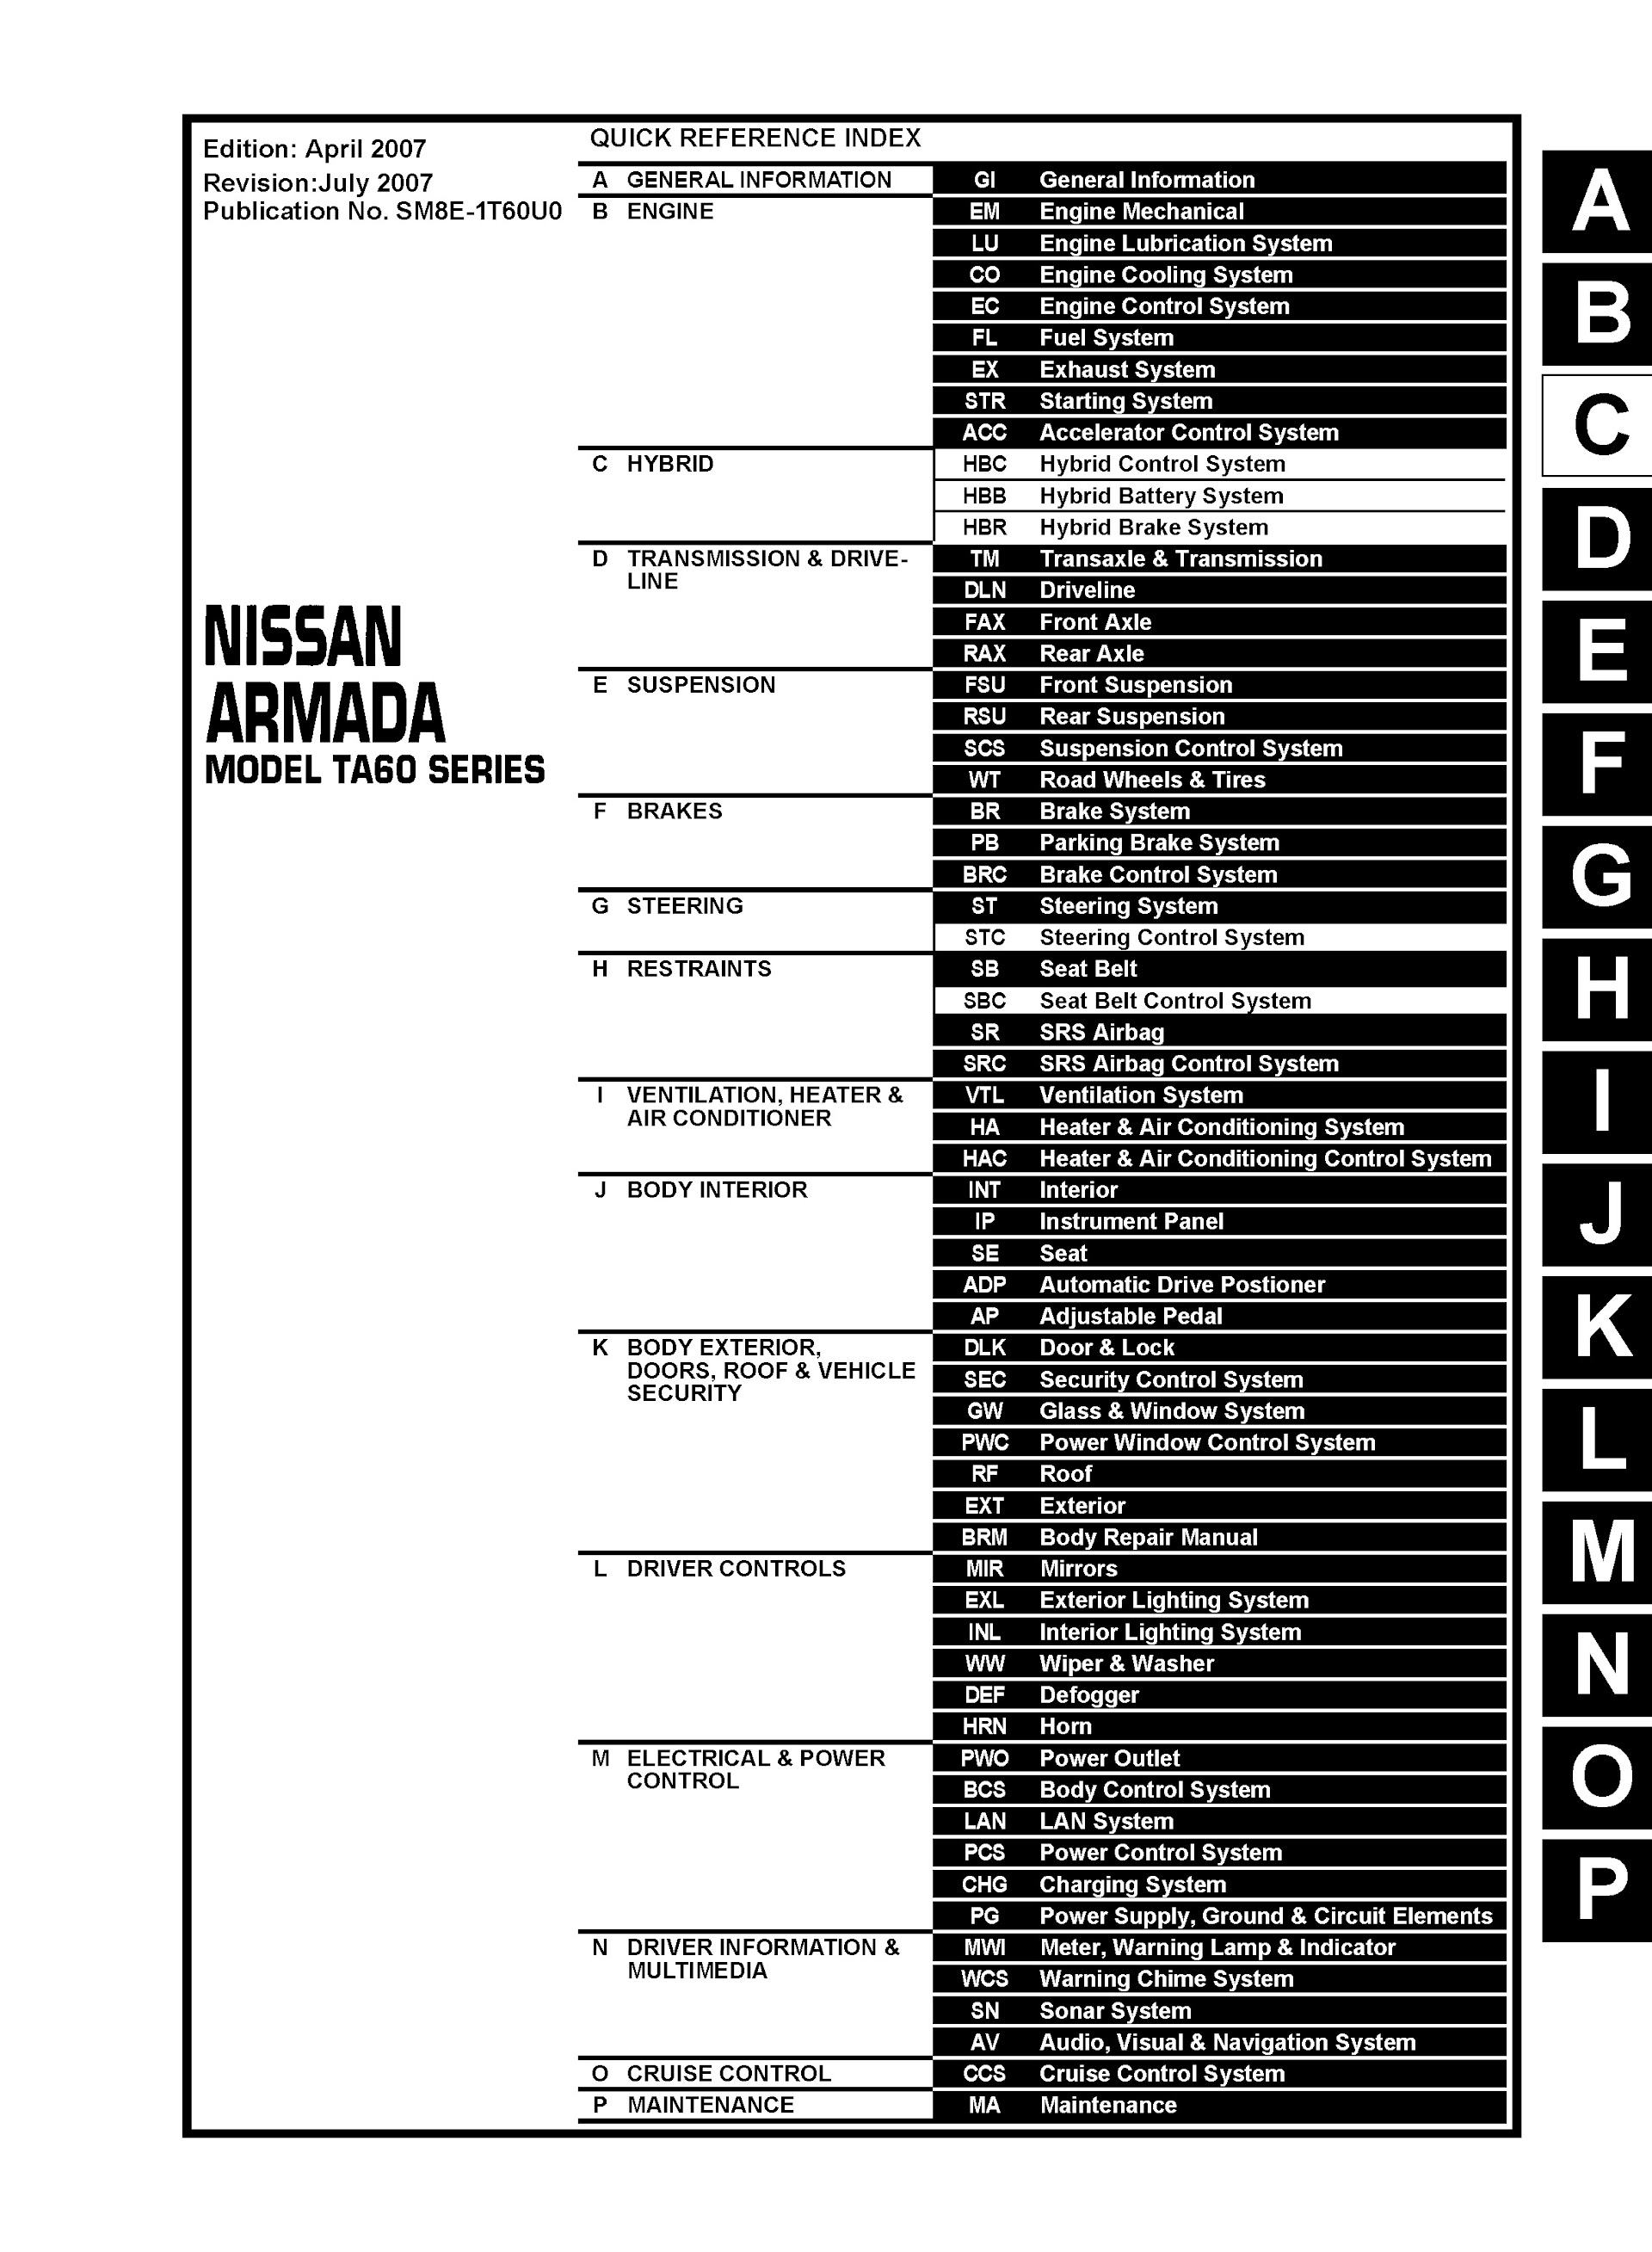 CONTENTS: 2008 Nissan Armada Repair Manual